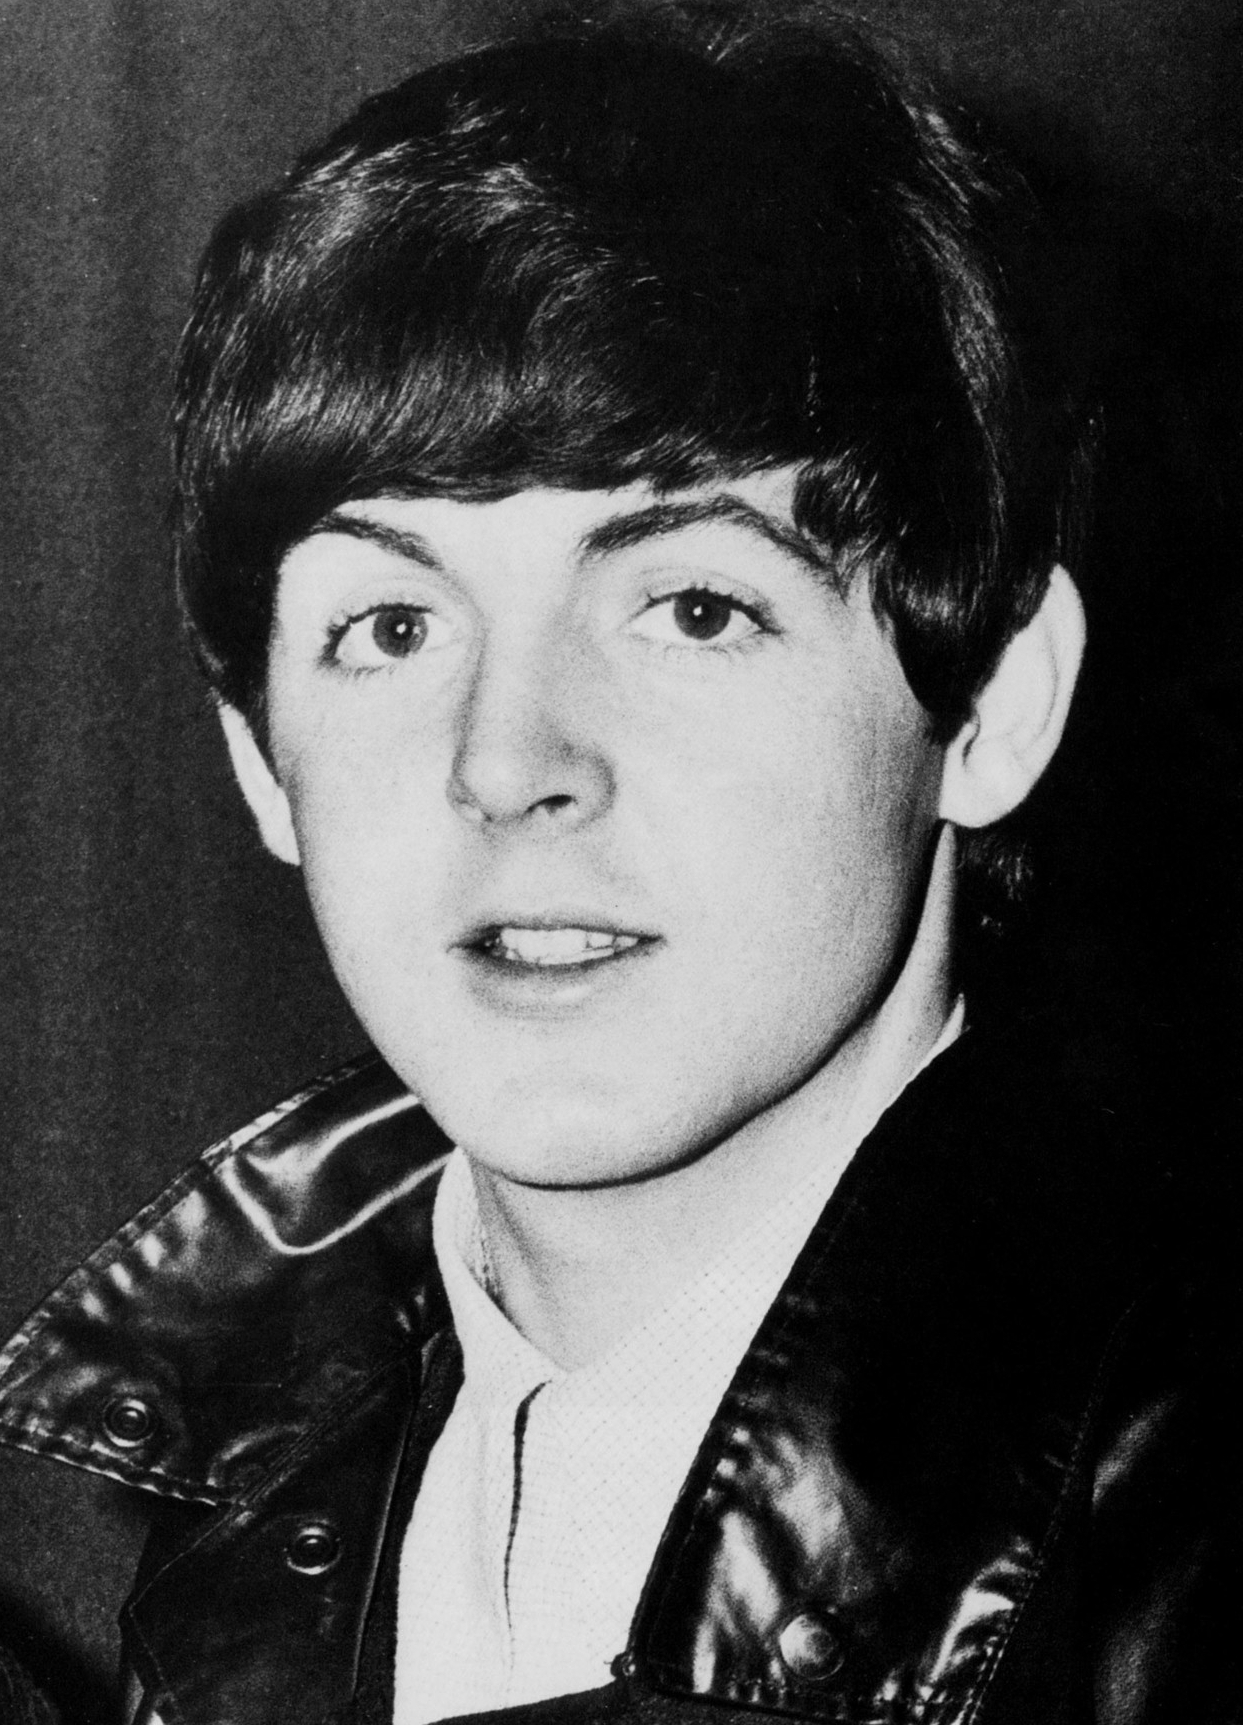 Young Paul McCartney - Childhood